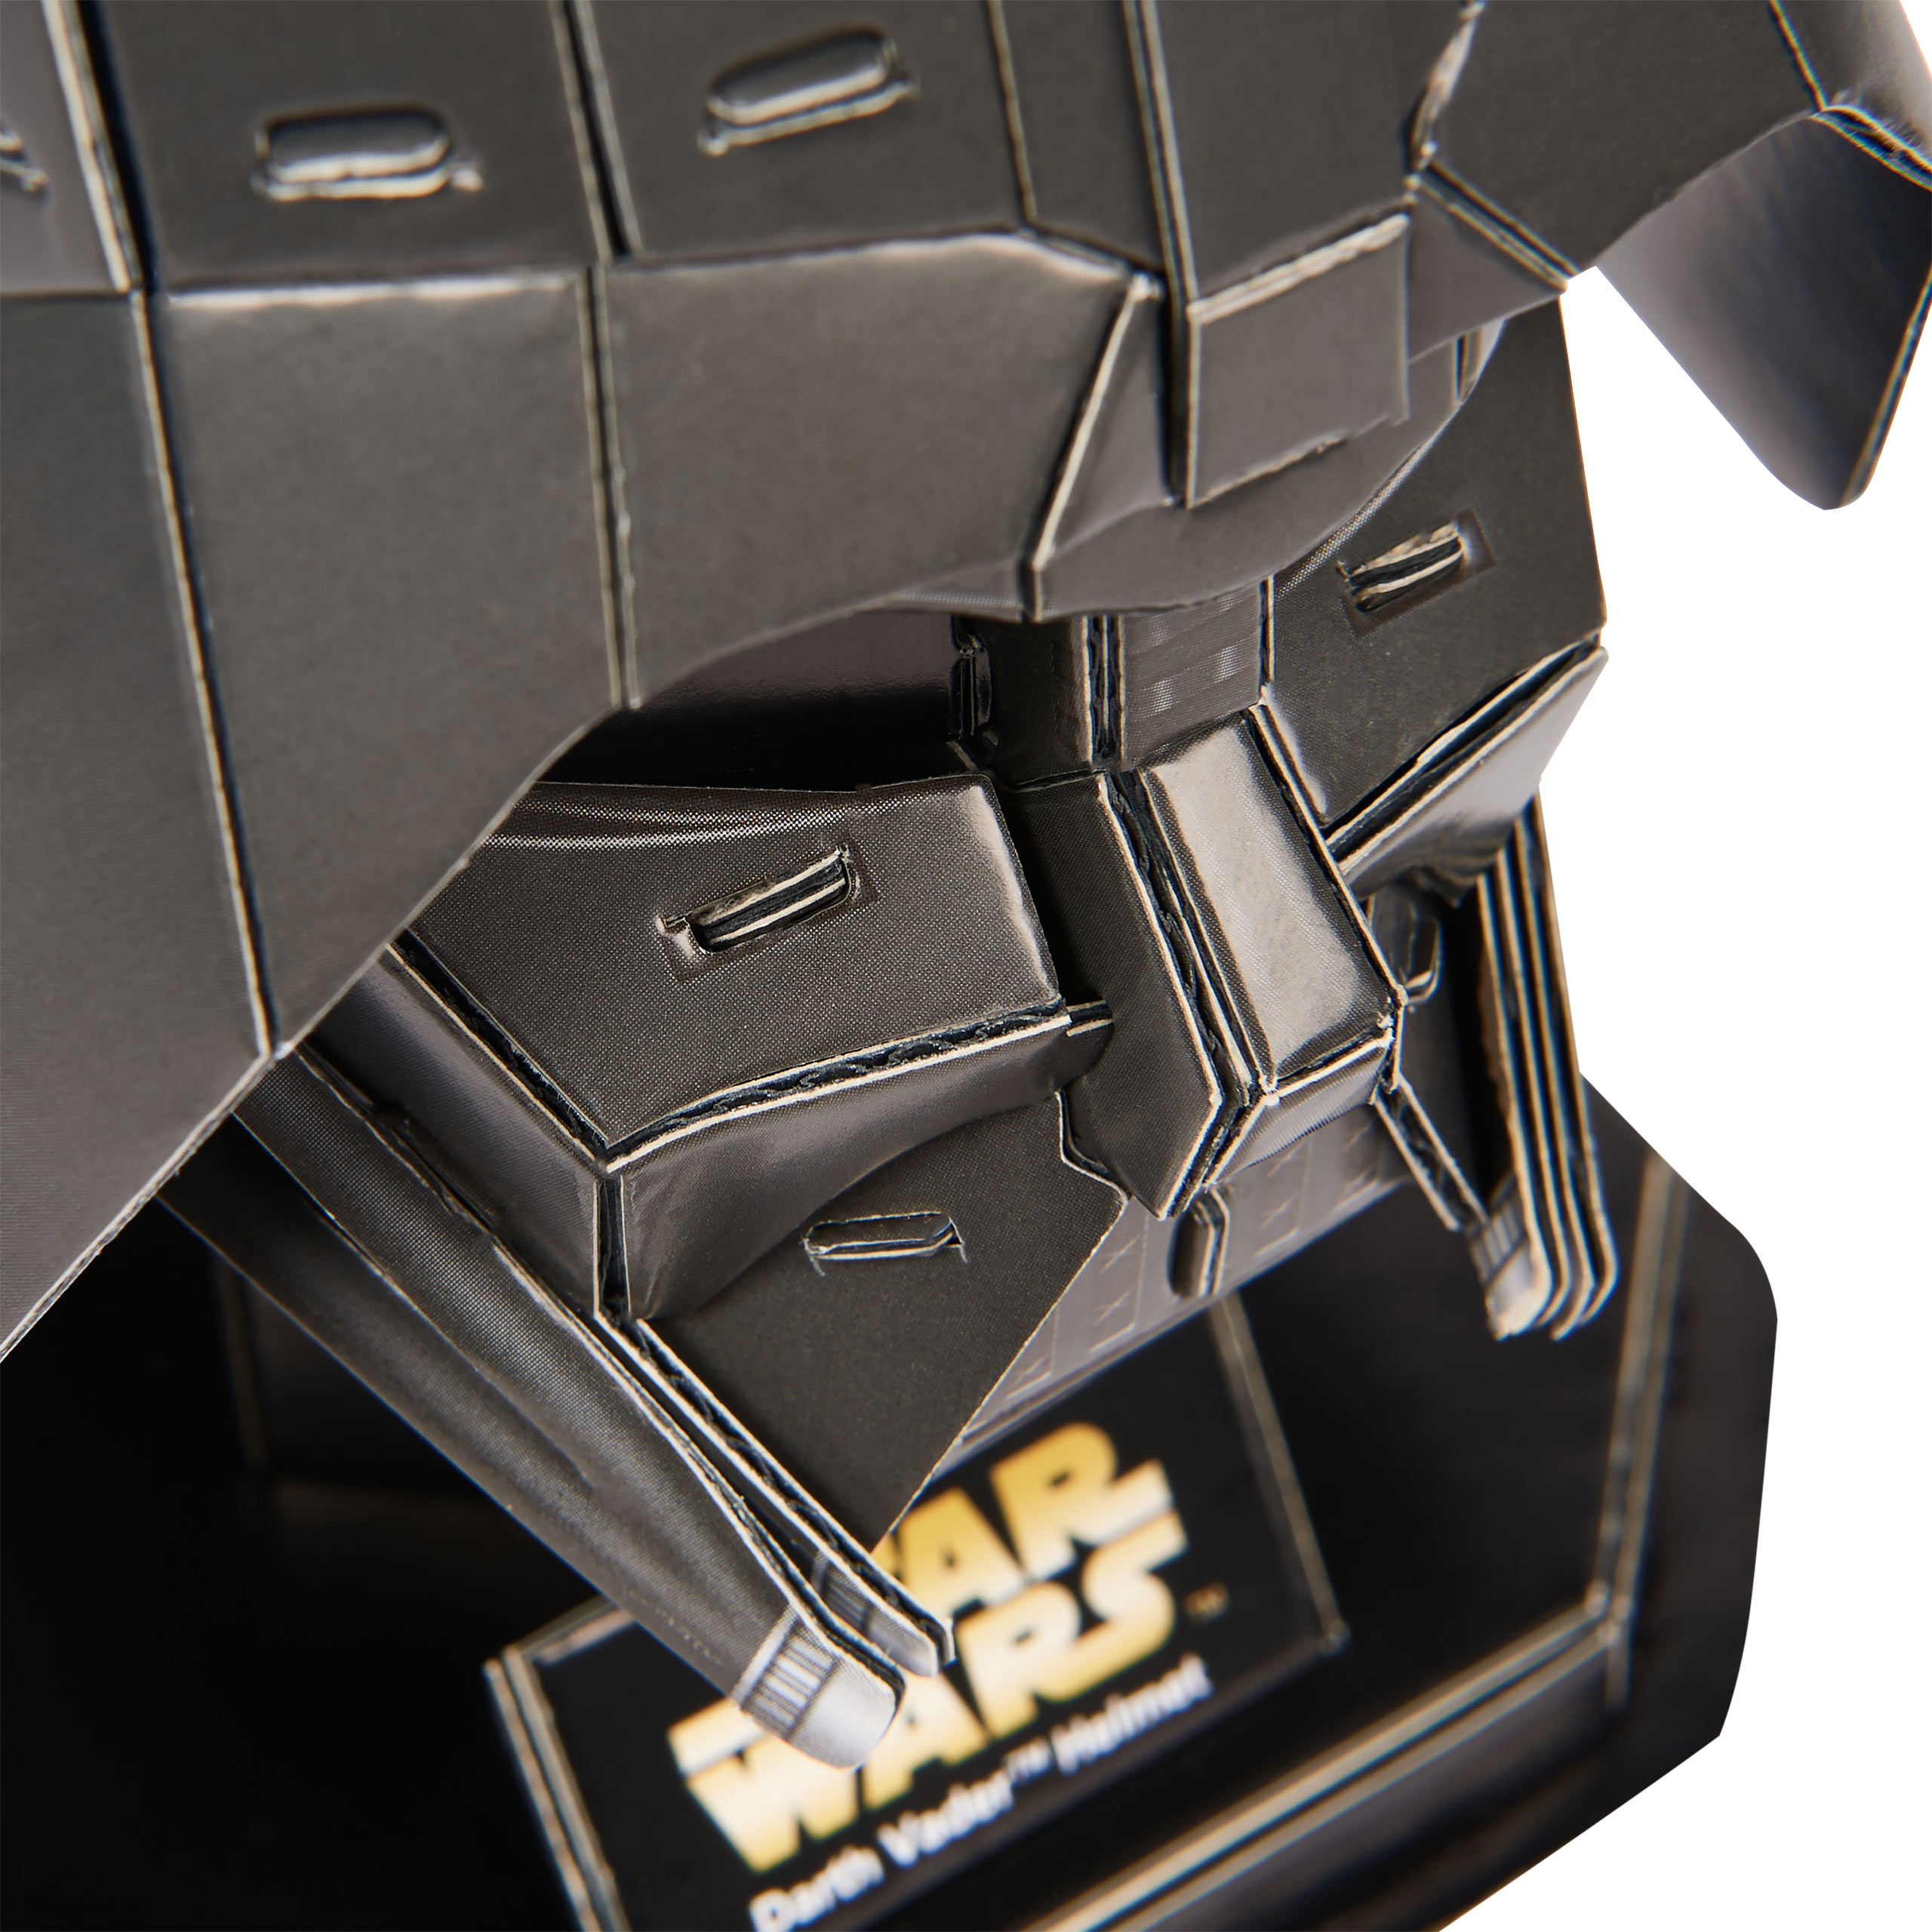 Casque Darth Vader Kit de construction de modèle 4D - Star Wars